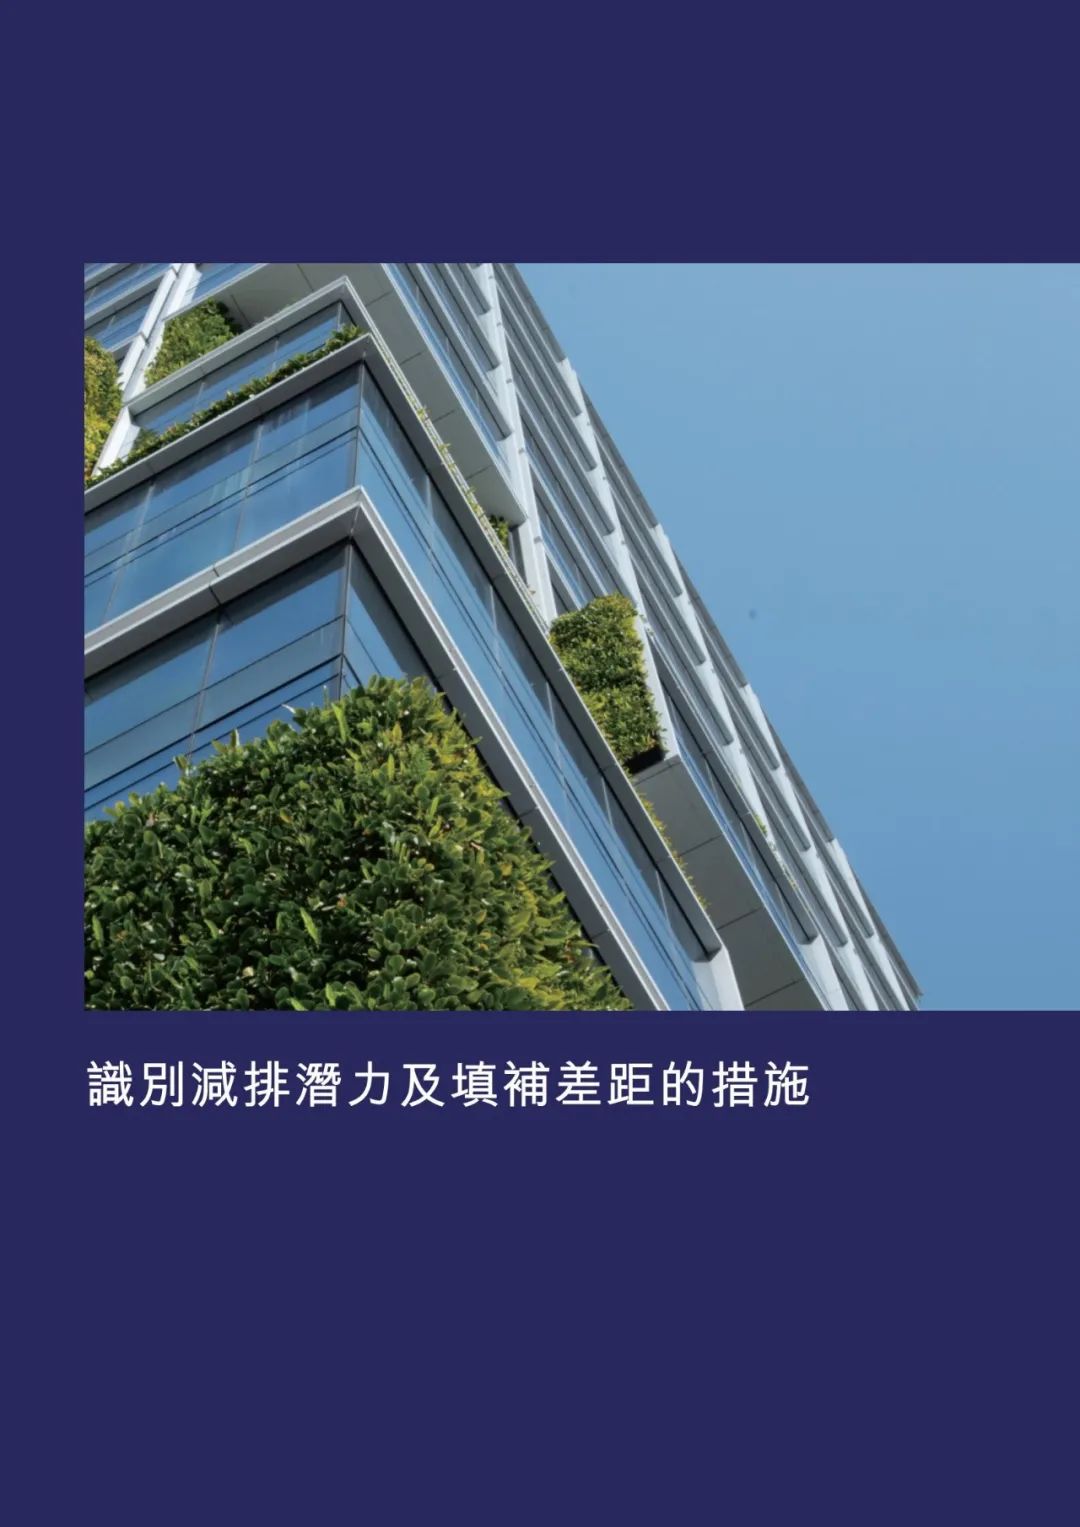 香港交易所发布《企业净零排放实用指引》